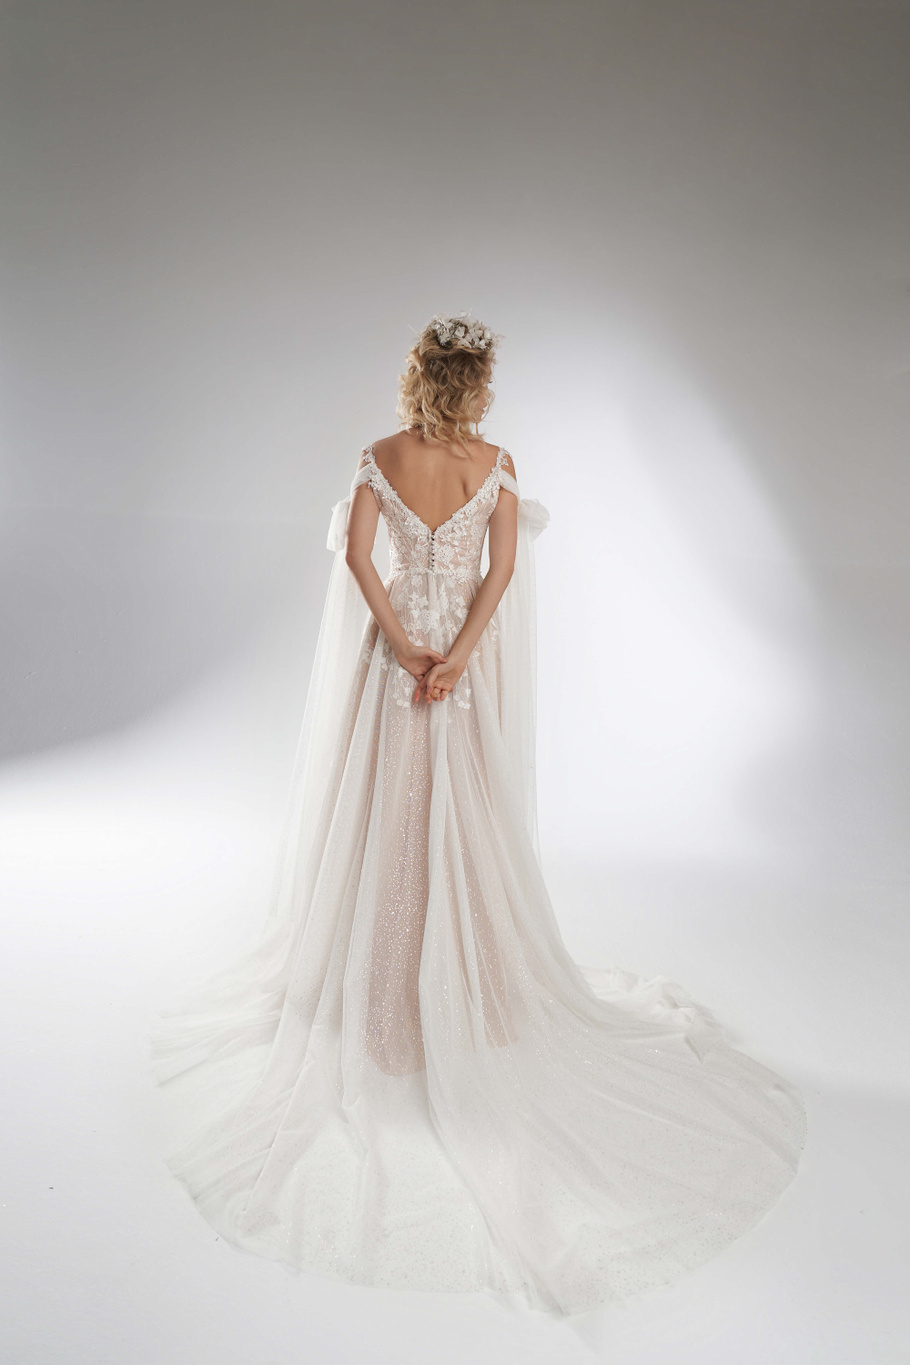 Купить свадебное платье «Гери» Рара Авис из коллекции Пьюр 2022 года в салоне «Мэри Трюфель»